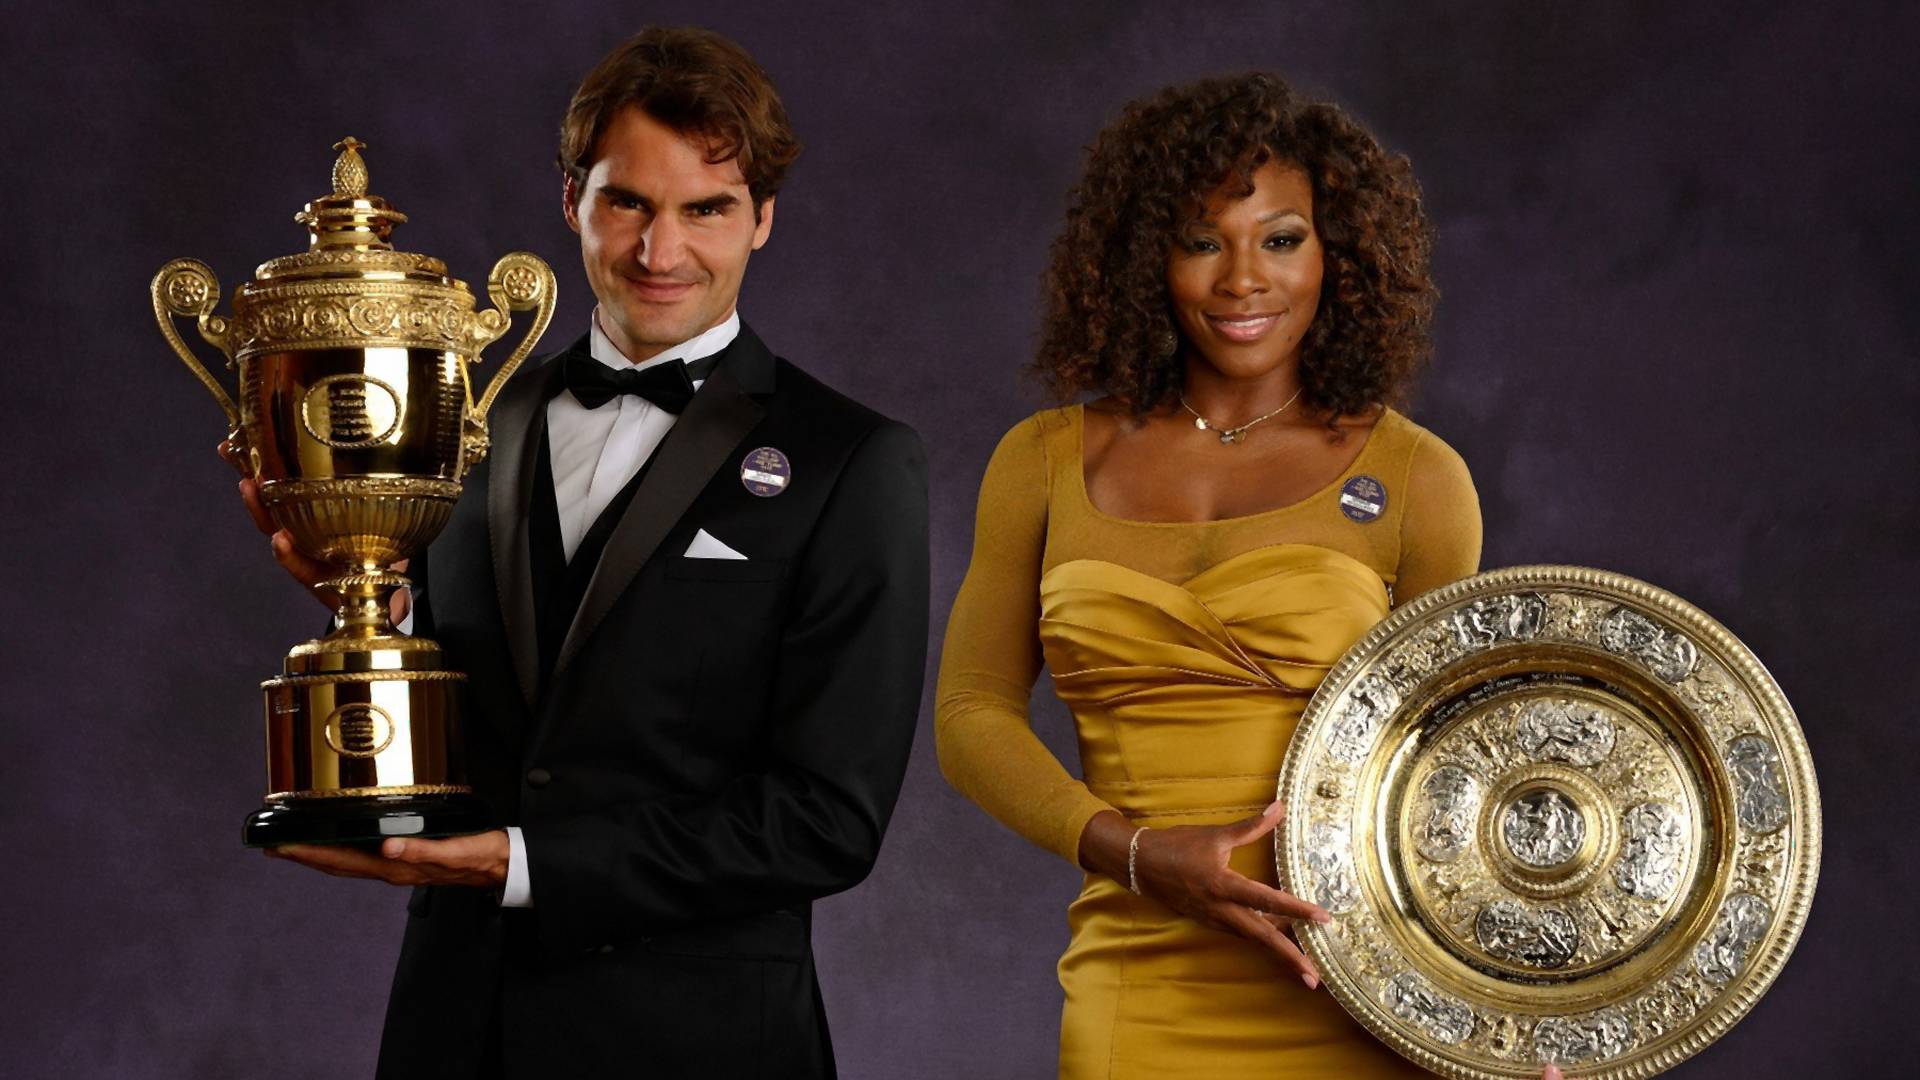 Neko je pitao ko bi pobedio - Serena ili Federer, i internet je poludeo